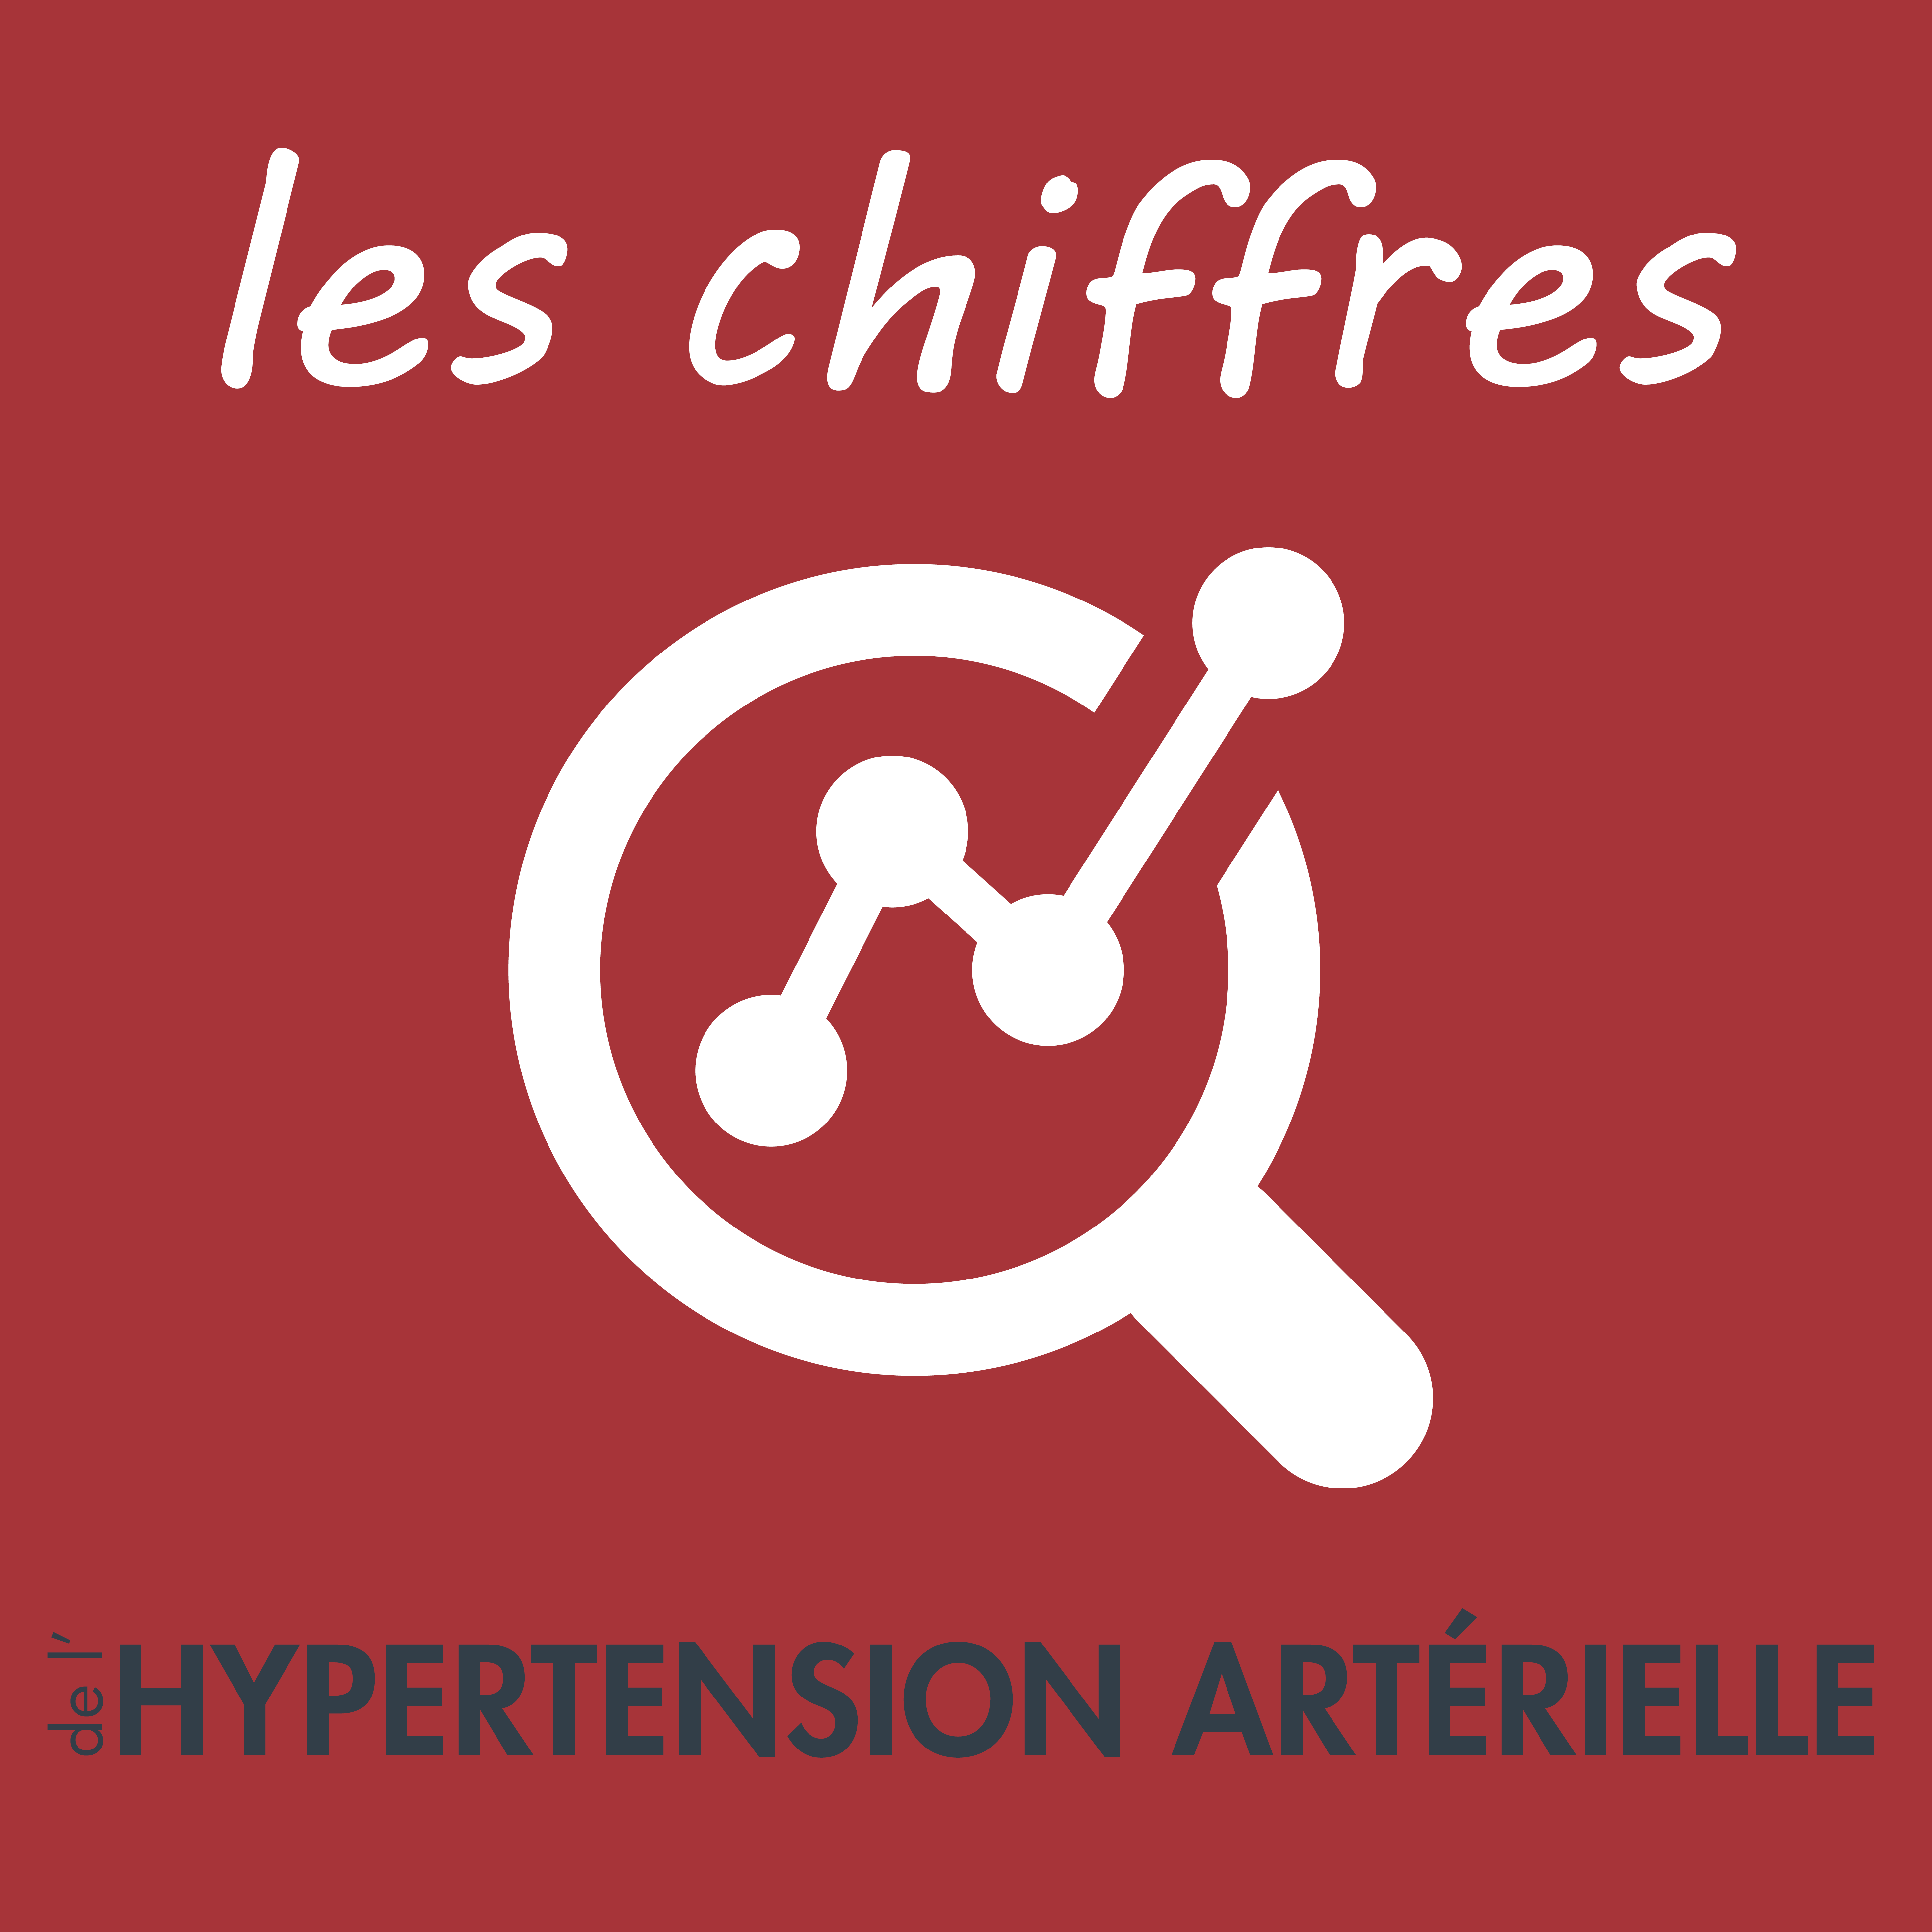 Conseils du Pr Xavier Girerd,Hypertension artérielle,soigner l'hypertension,vivre avec l'hypertension,traiter l'hypertension,causes et risques de l'hypertension